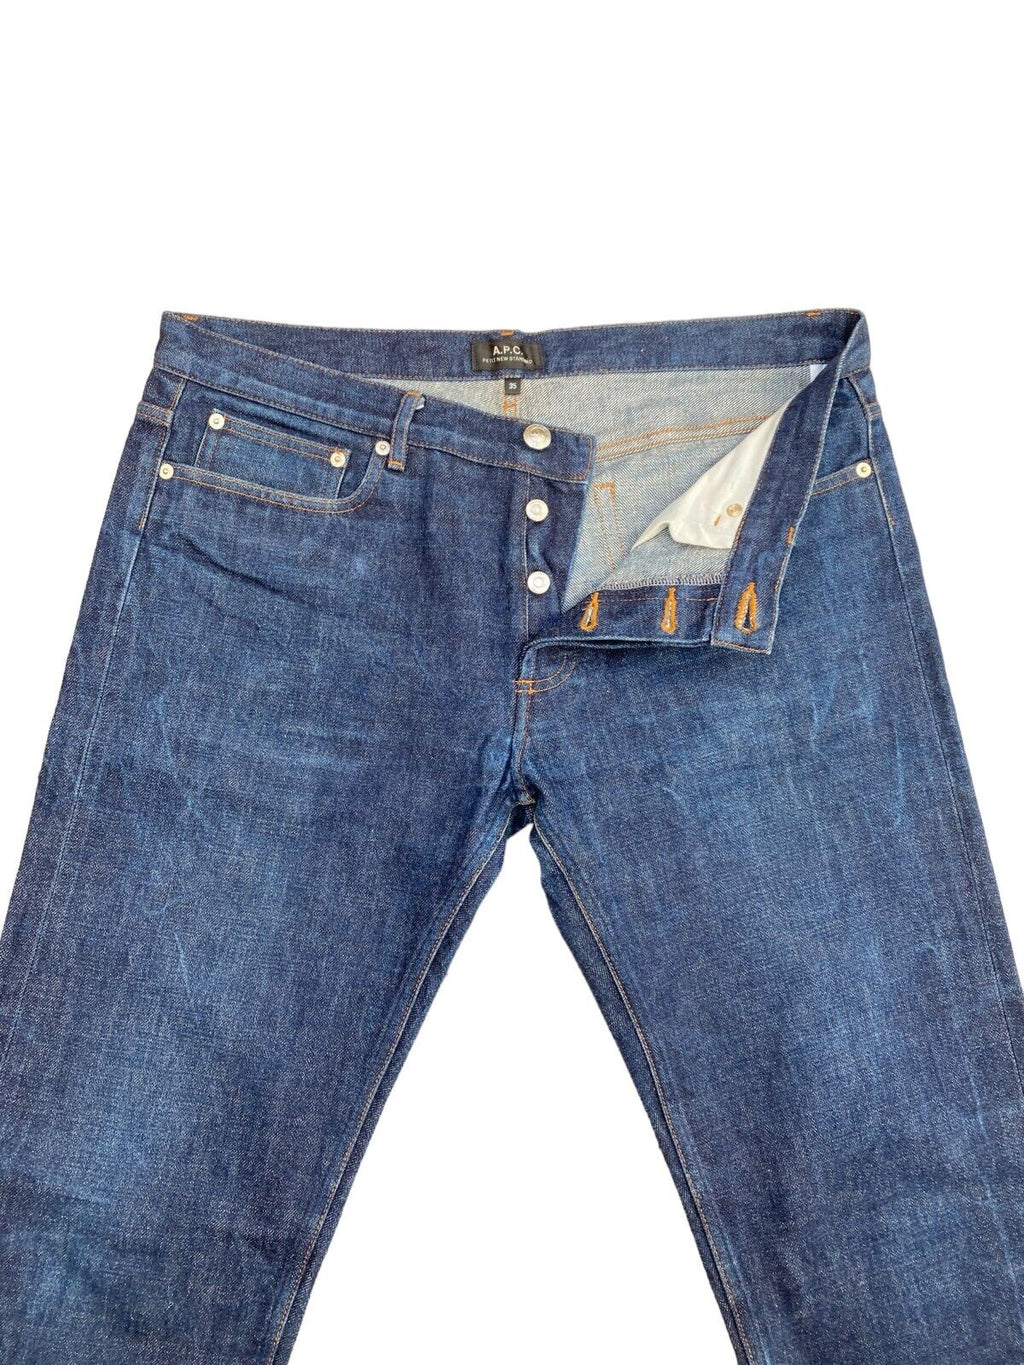 Raw Denim Jeans   Petit New Standard